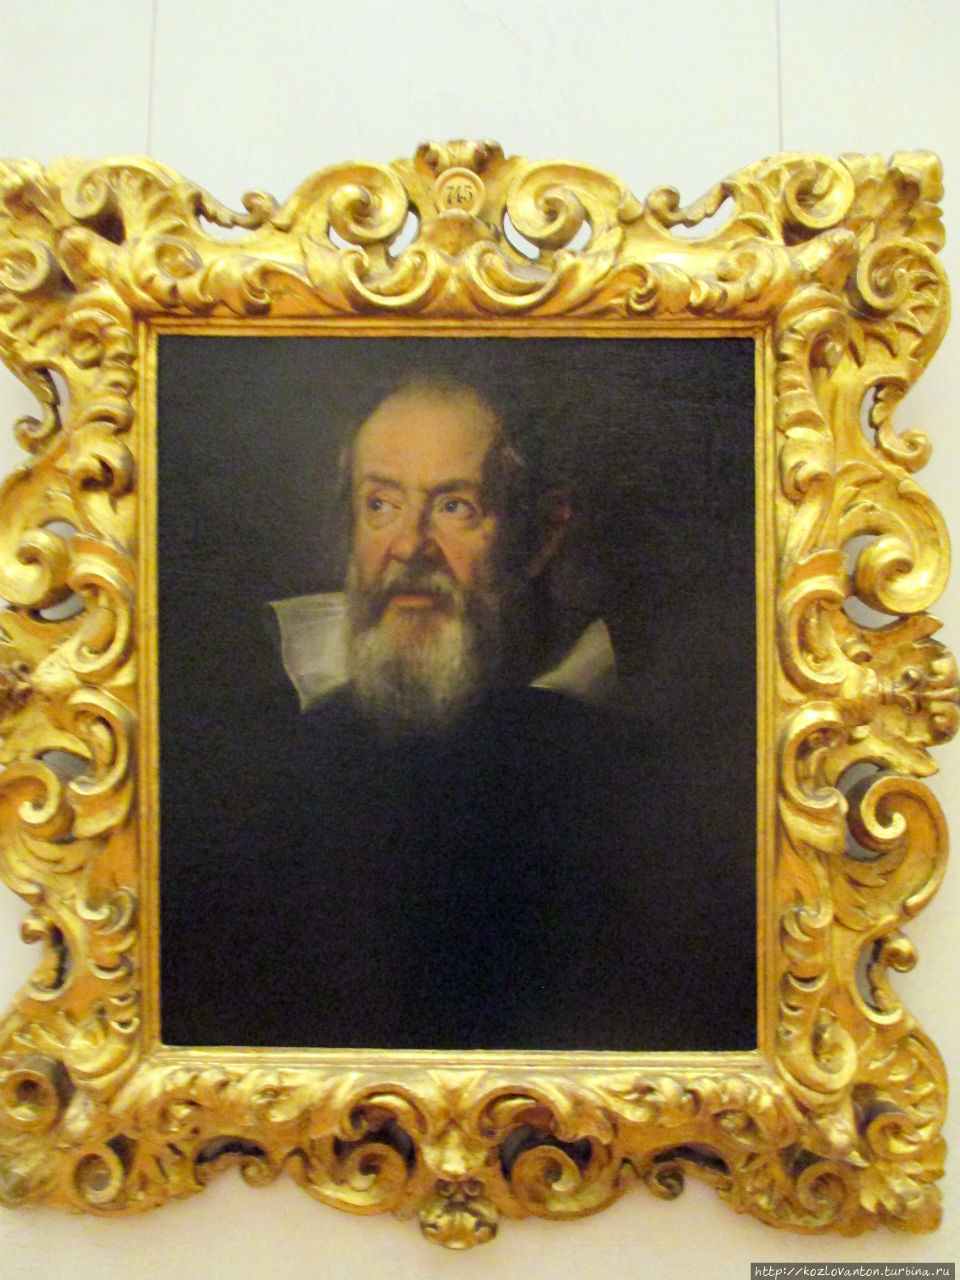 Портрет Галилео Галилея кисти Юстуса Сустерманса. Так и хочется сказать, что из школьного учебника физики, но нет — из галереи Уффици.